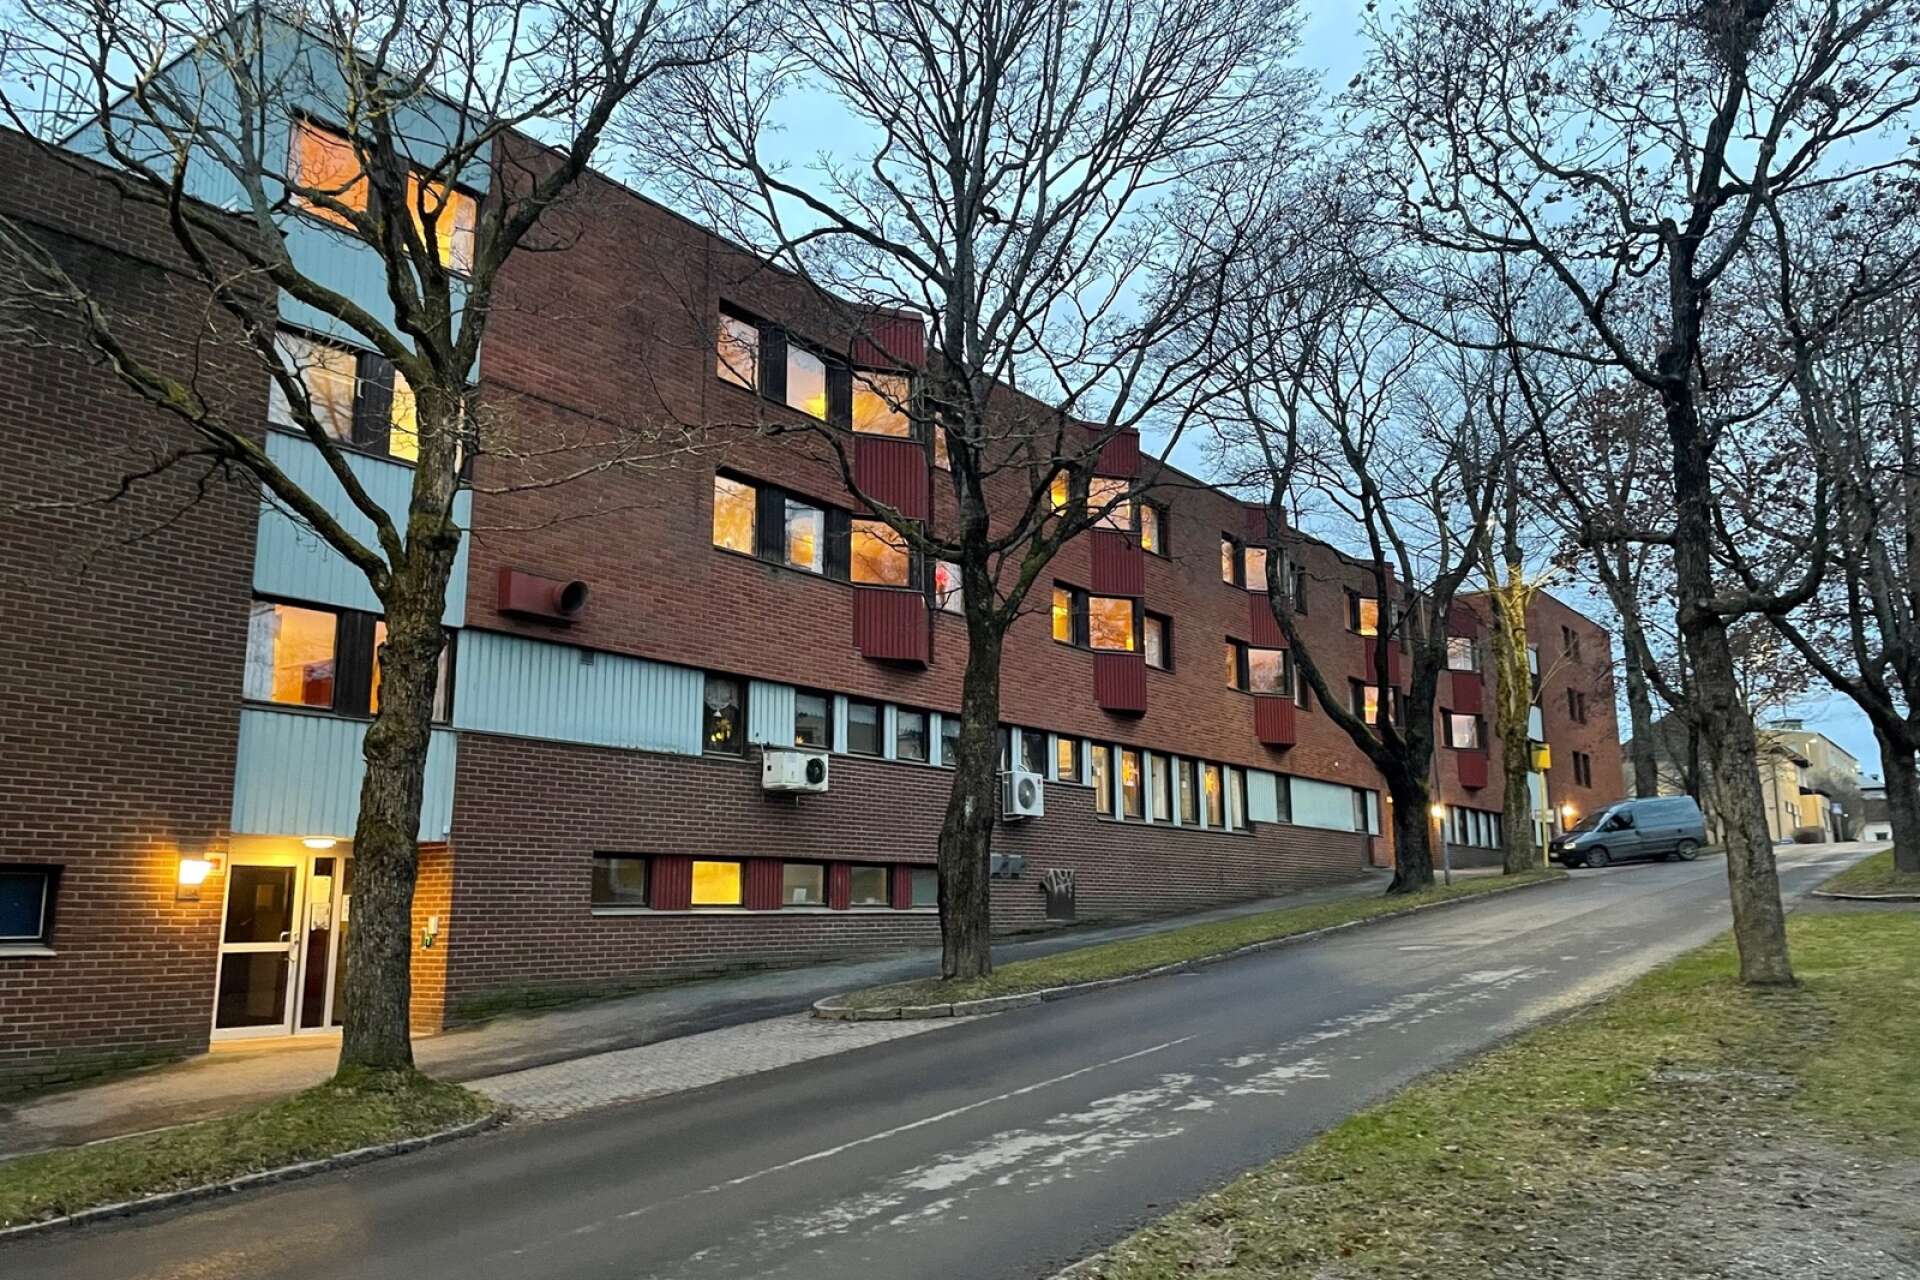 Träffpunkt Smedberg, som debatterats den senaste veckan, ligger i servicehuset Smedberg, men verksamheten är öppen för alla äldre i Arvika.